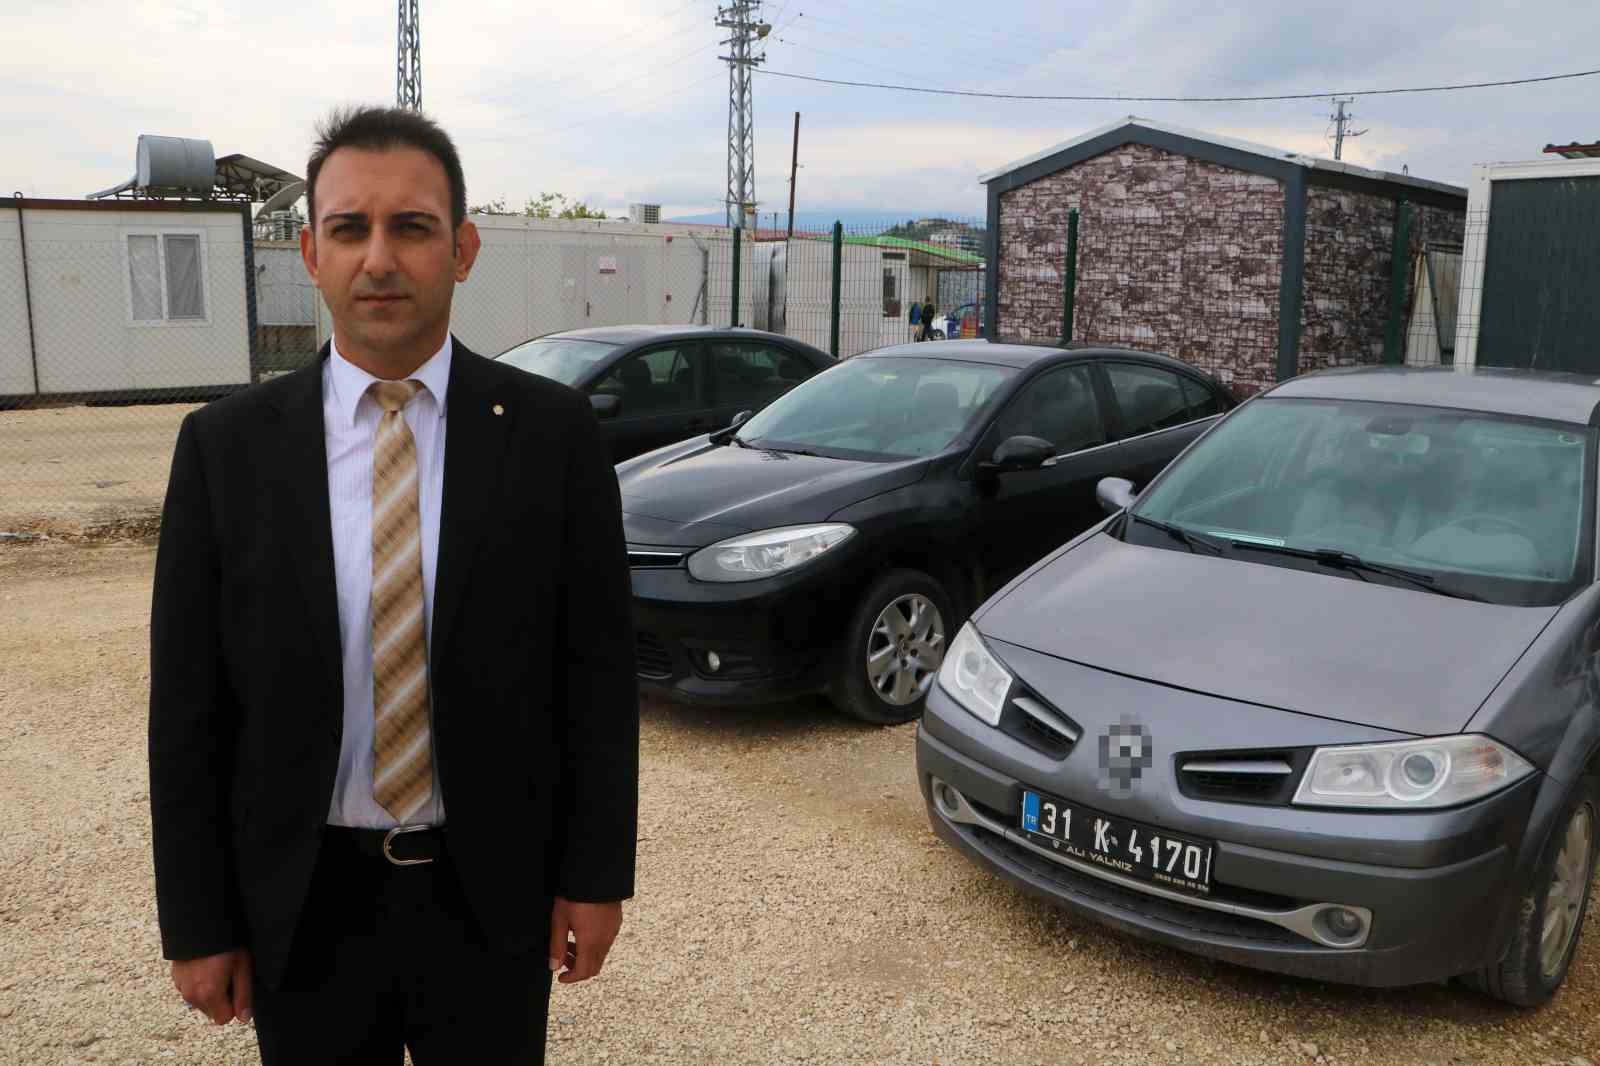 Defne Belediye Başkanı Halil İbrahim Özgün, göreve başlar başlamaz "israf haramdır" anlayışıyla 5 makam aracını satışa çıkardı ve kendinden önceki başkanın kullandığı kiralık lüks aracı iade etti.